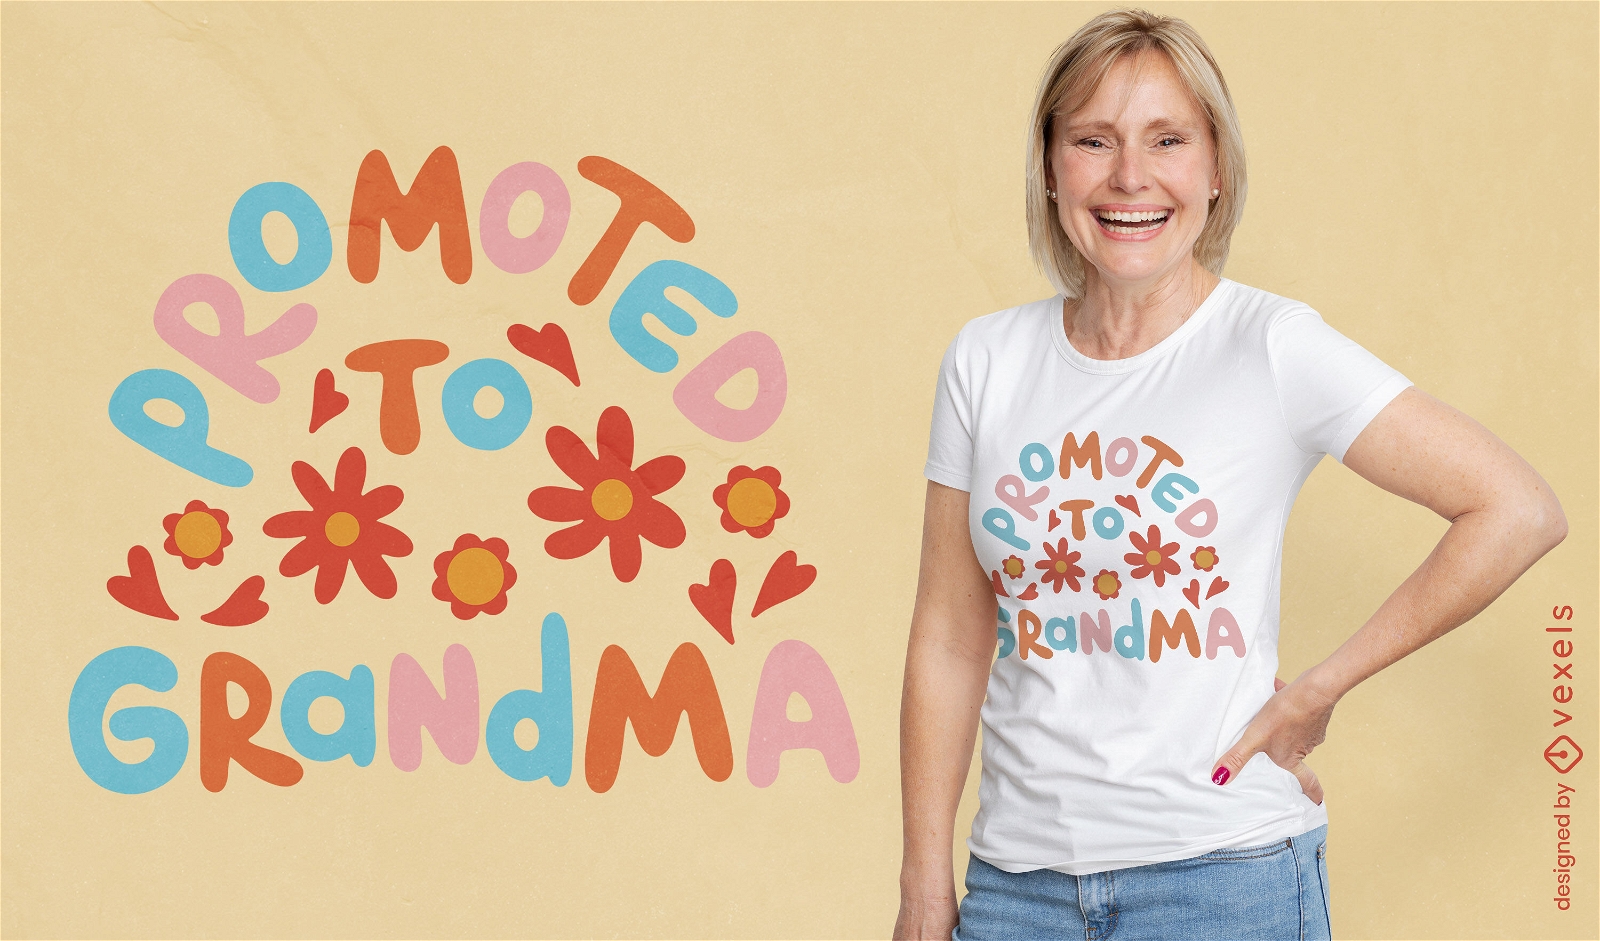 Zum T-Shirt-Design mit Blumenzitat der Oma bef?rdert